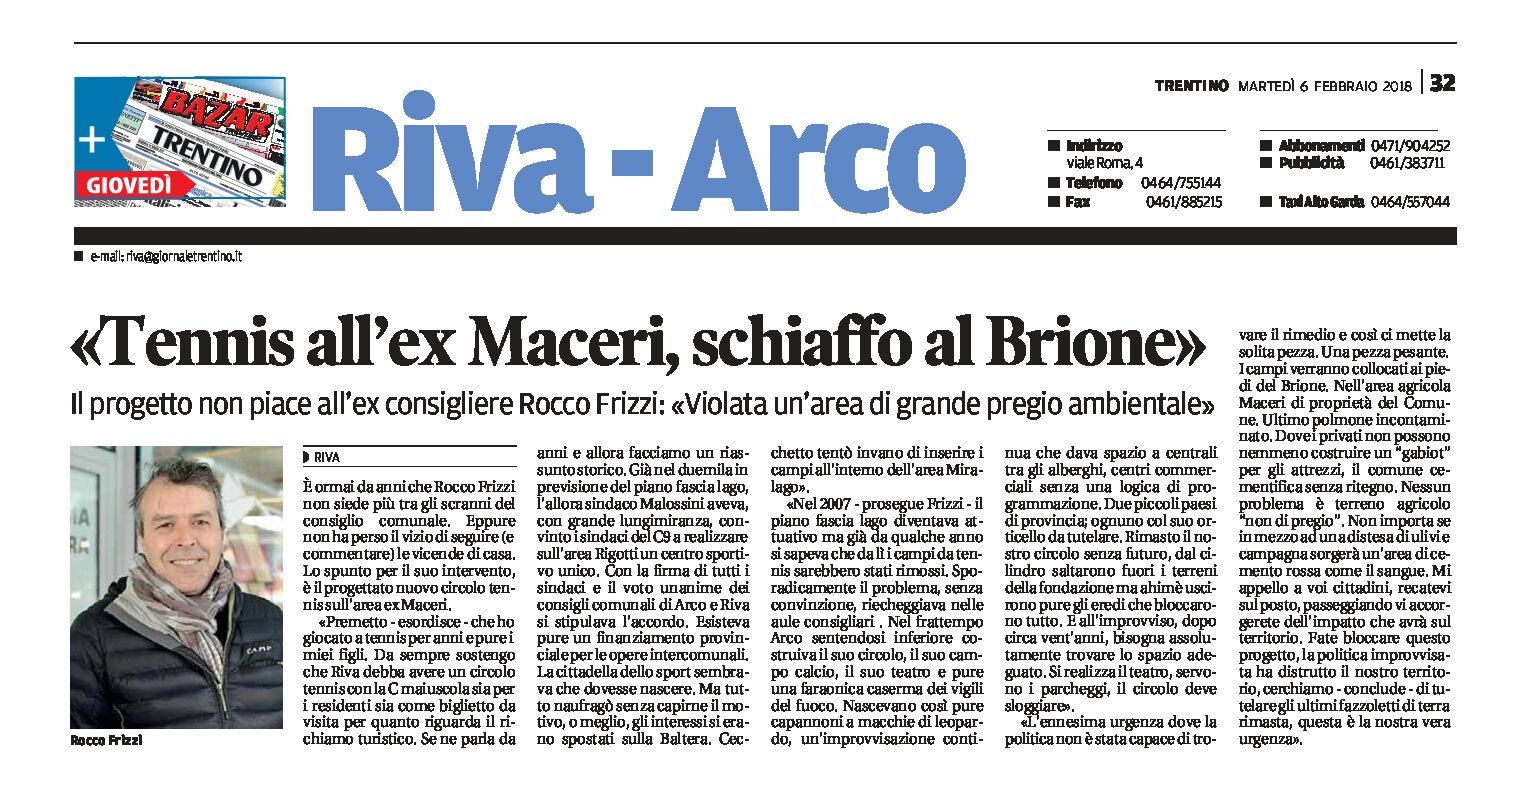 Riva, tennis all’ex Maceri: schiaffo al Brione